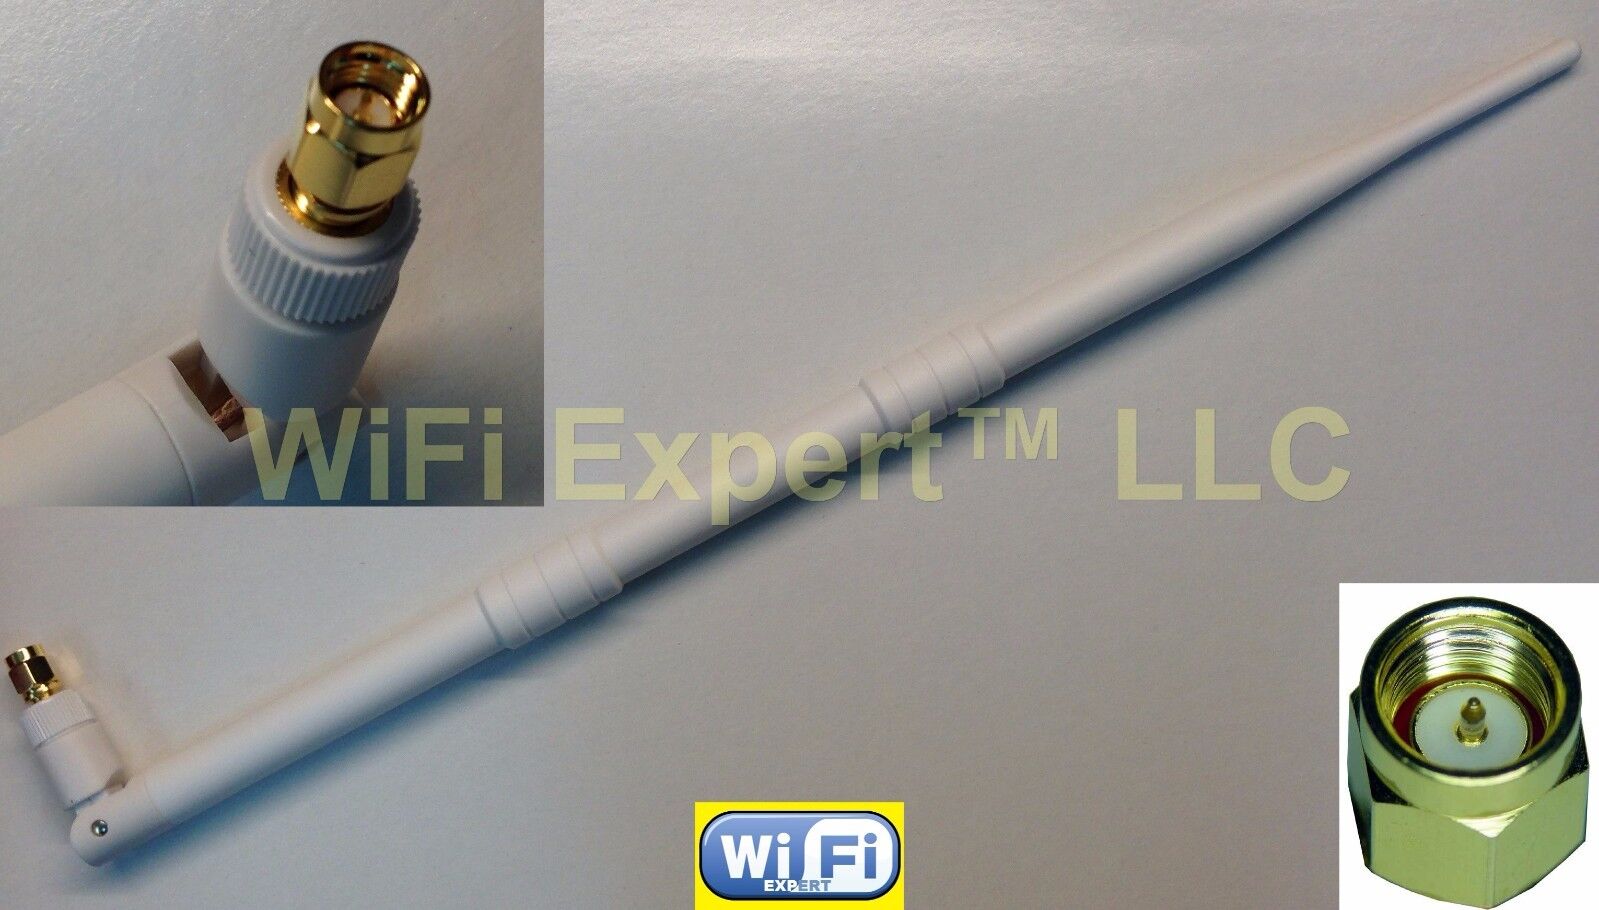 White 2.4GHz 9DBI antenna for Foscam FI8918W FI8910W FI8905W FI8904W ip cameras